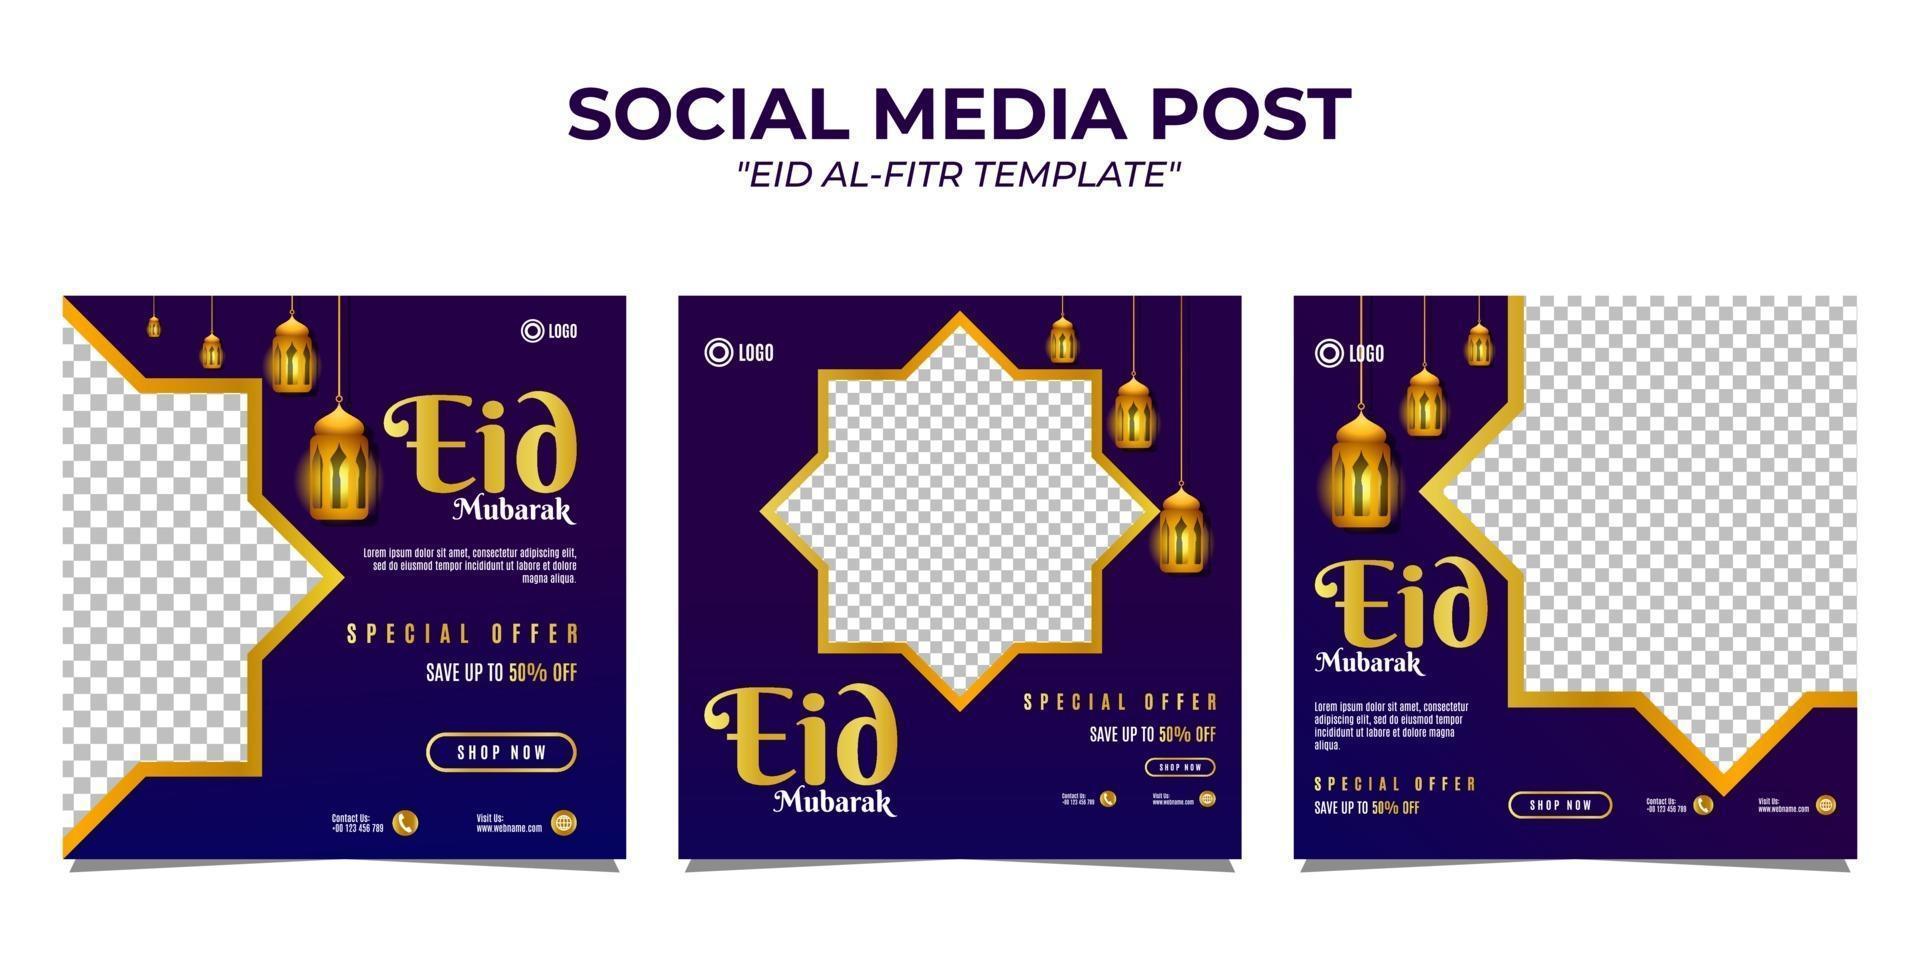 Eid Al-Fitr social media post template vector